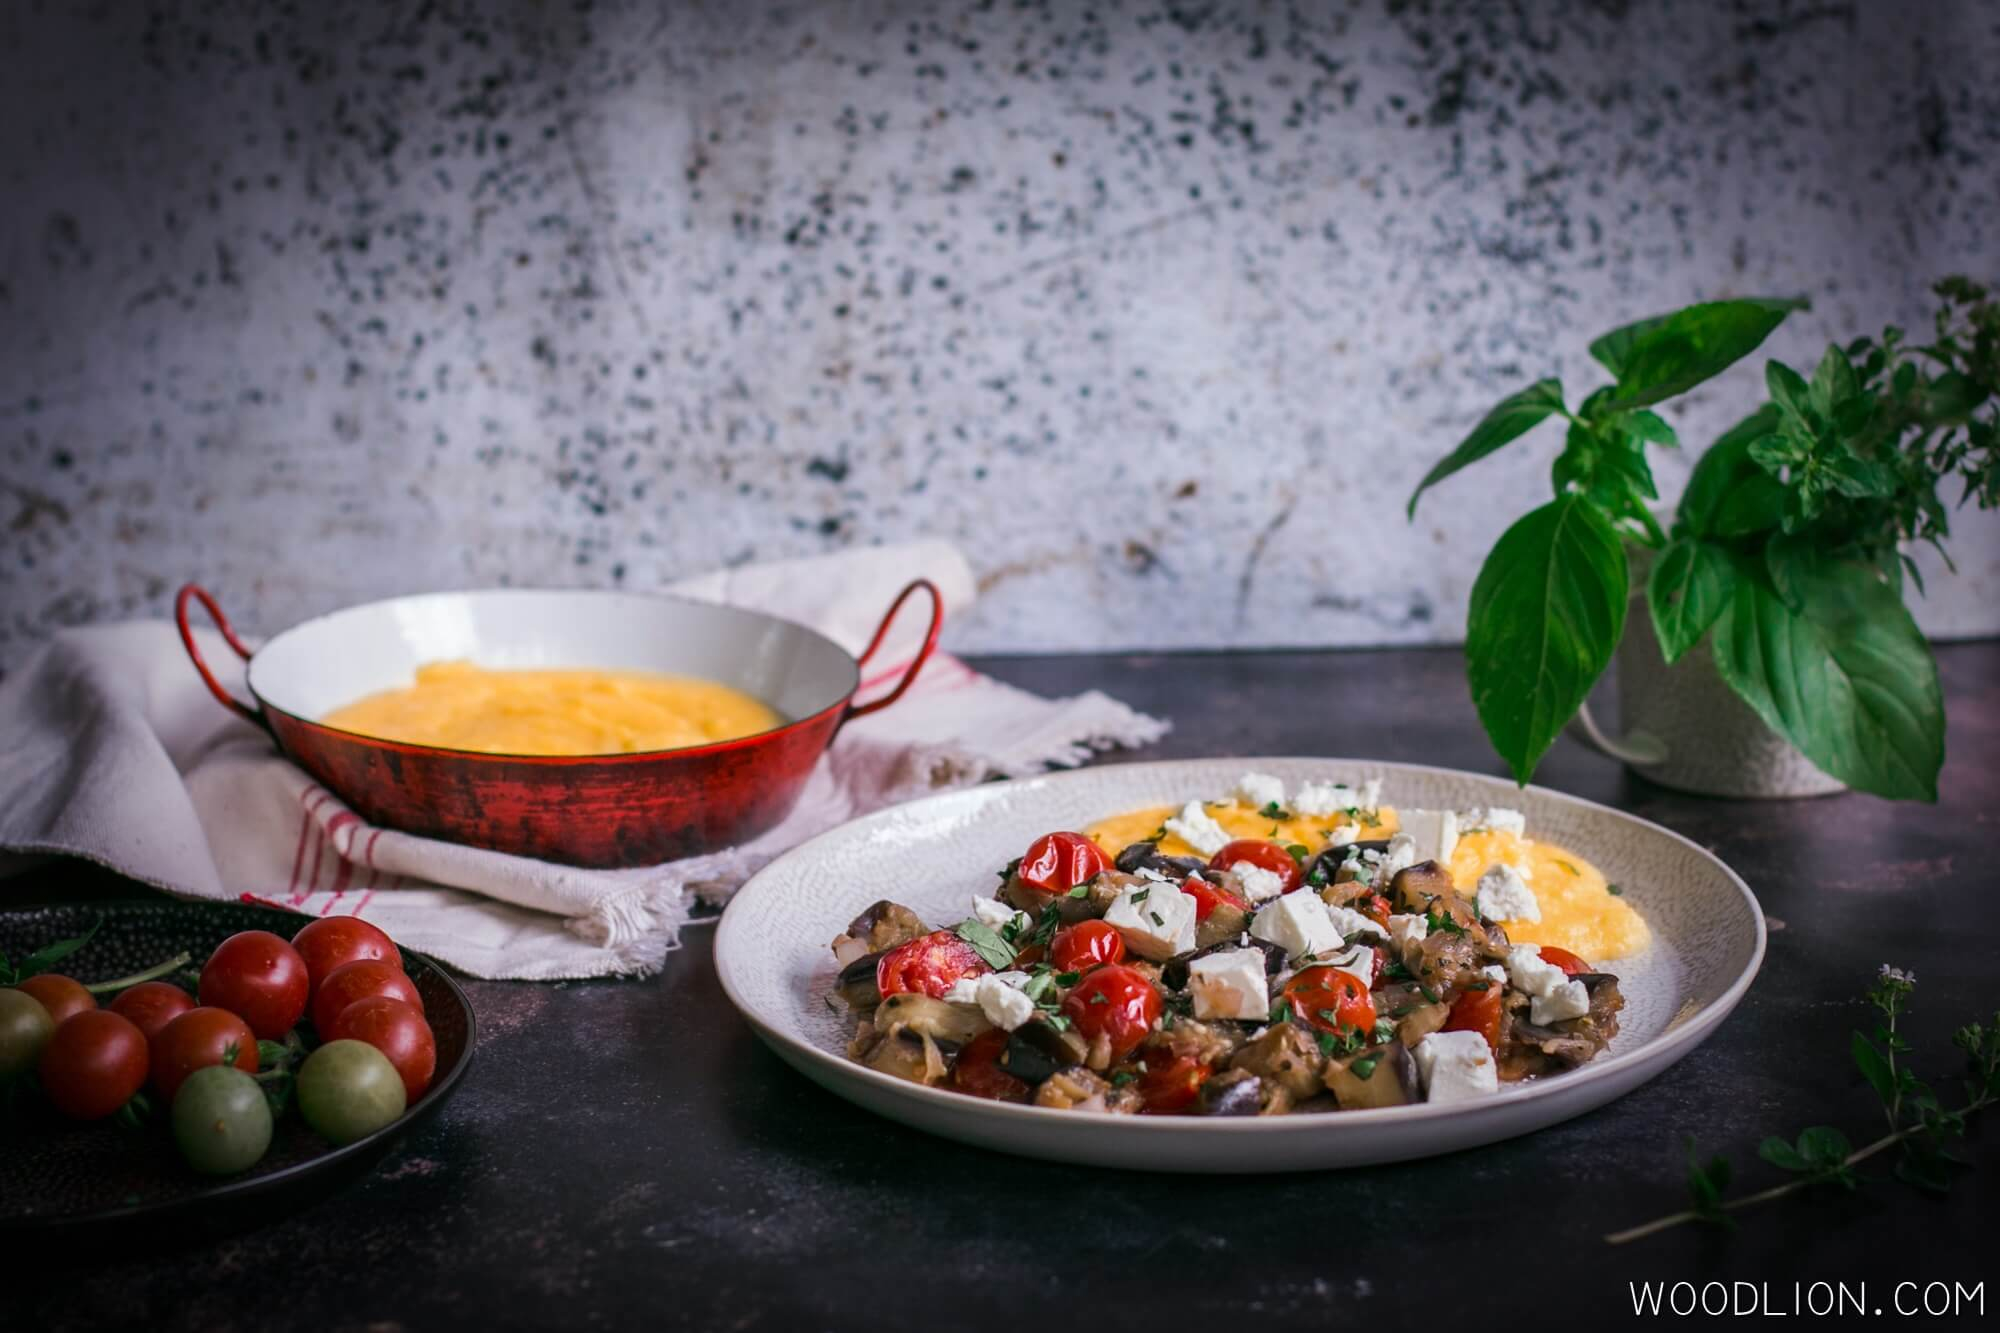 Woodlion Gastro Blog#7 - Mediterrán padlizsánragu ízletes és krémes polentával körítve